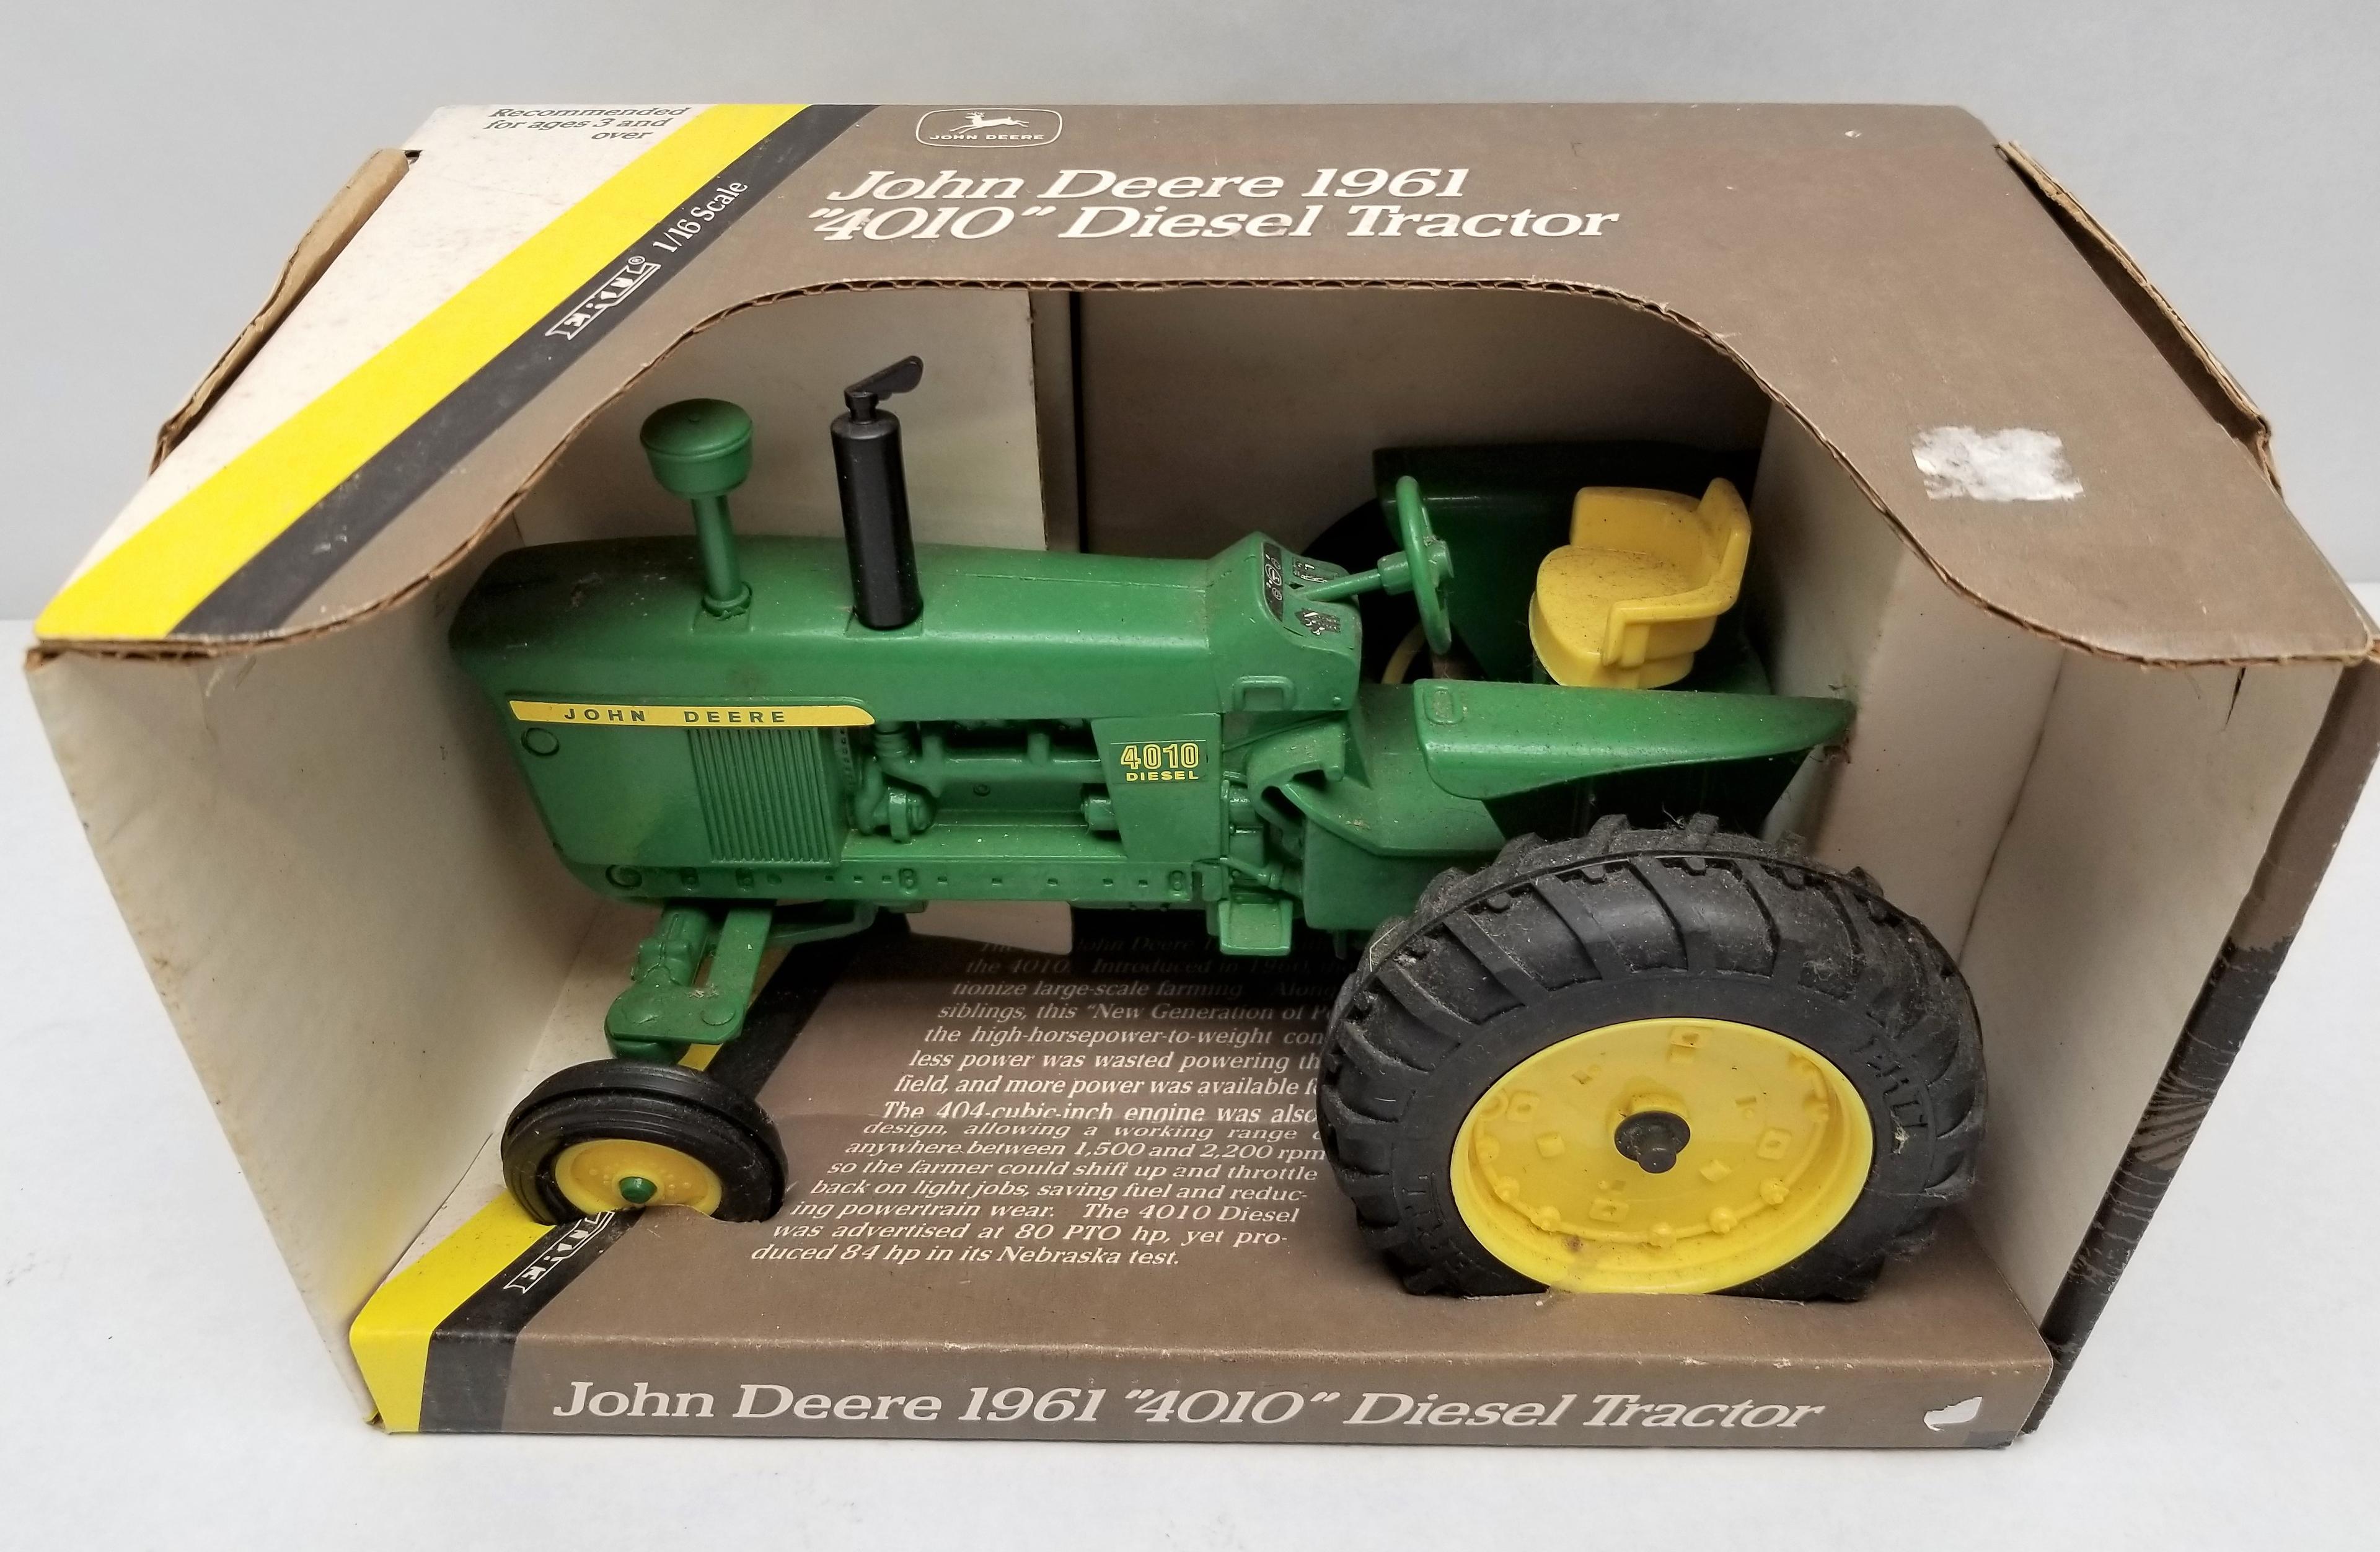 ERTL John Deere 1961 4010 Diesel Tractor